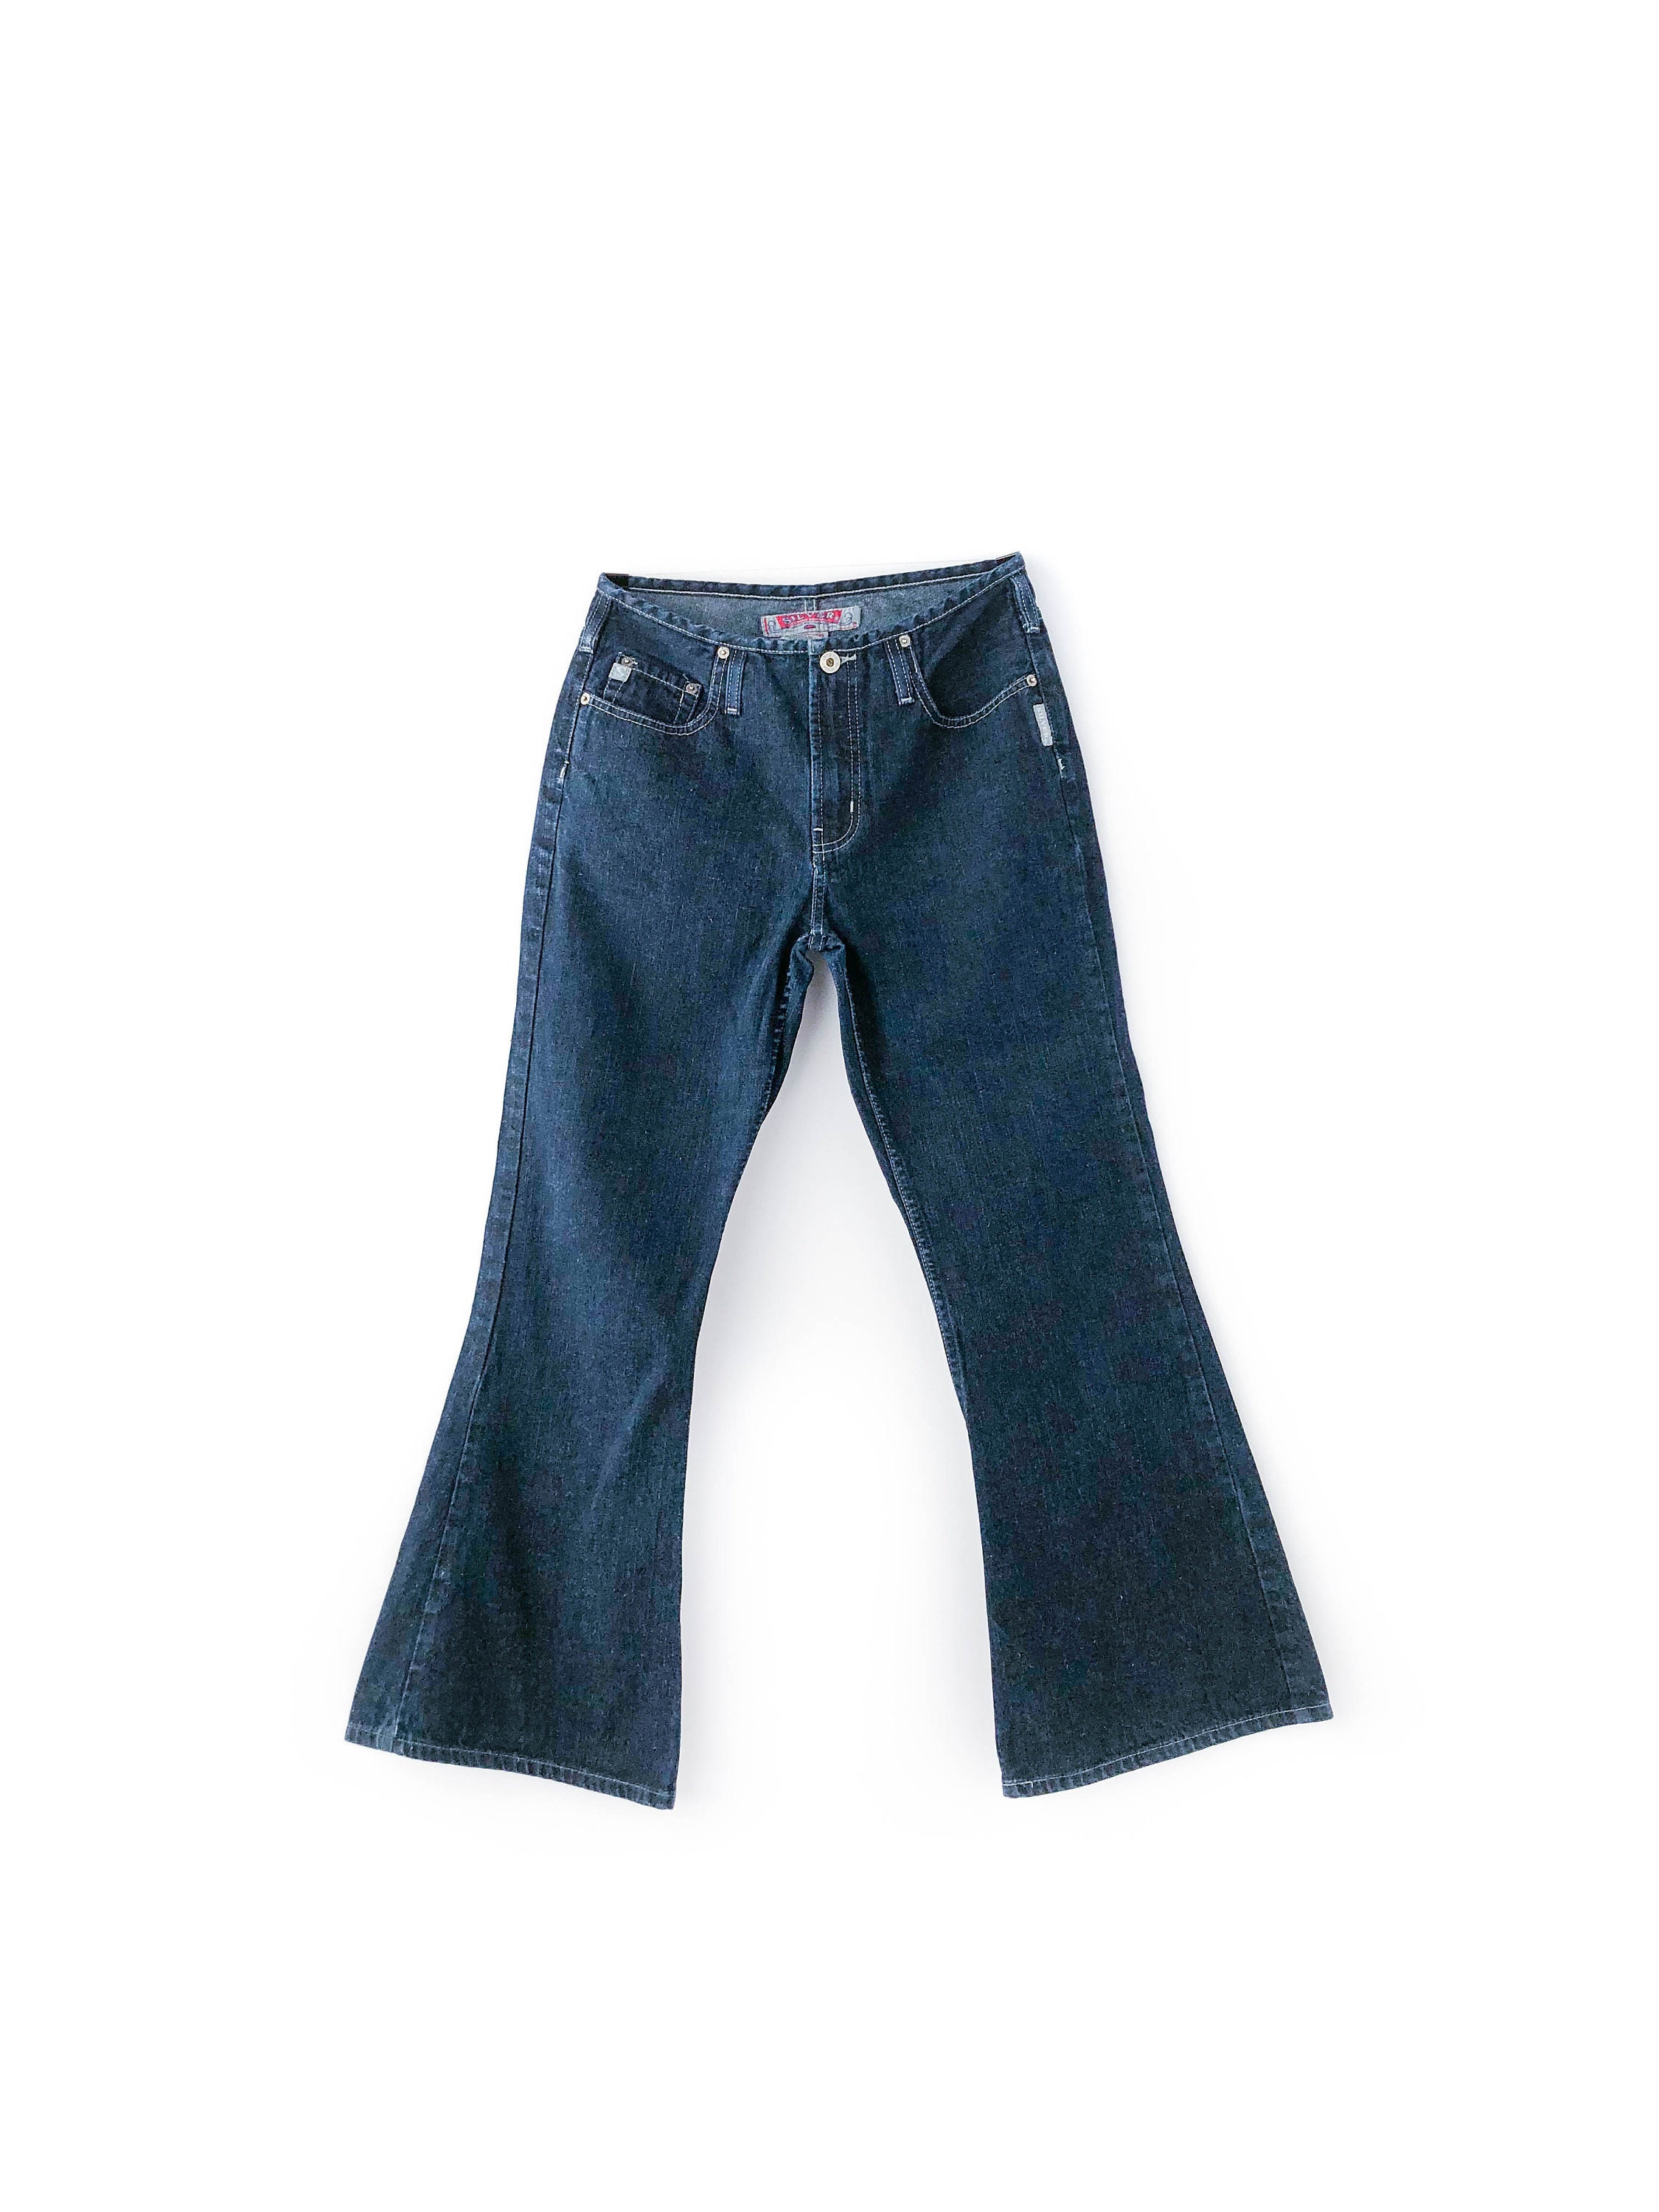 Aesthetic Retro/80s vibes ཹ։❀  Bell bottom jeans, Flare jeans, Boho denim